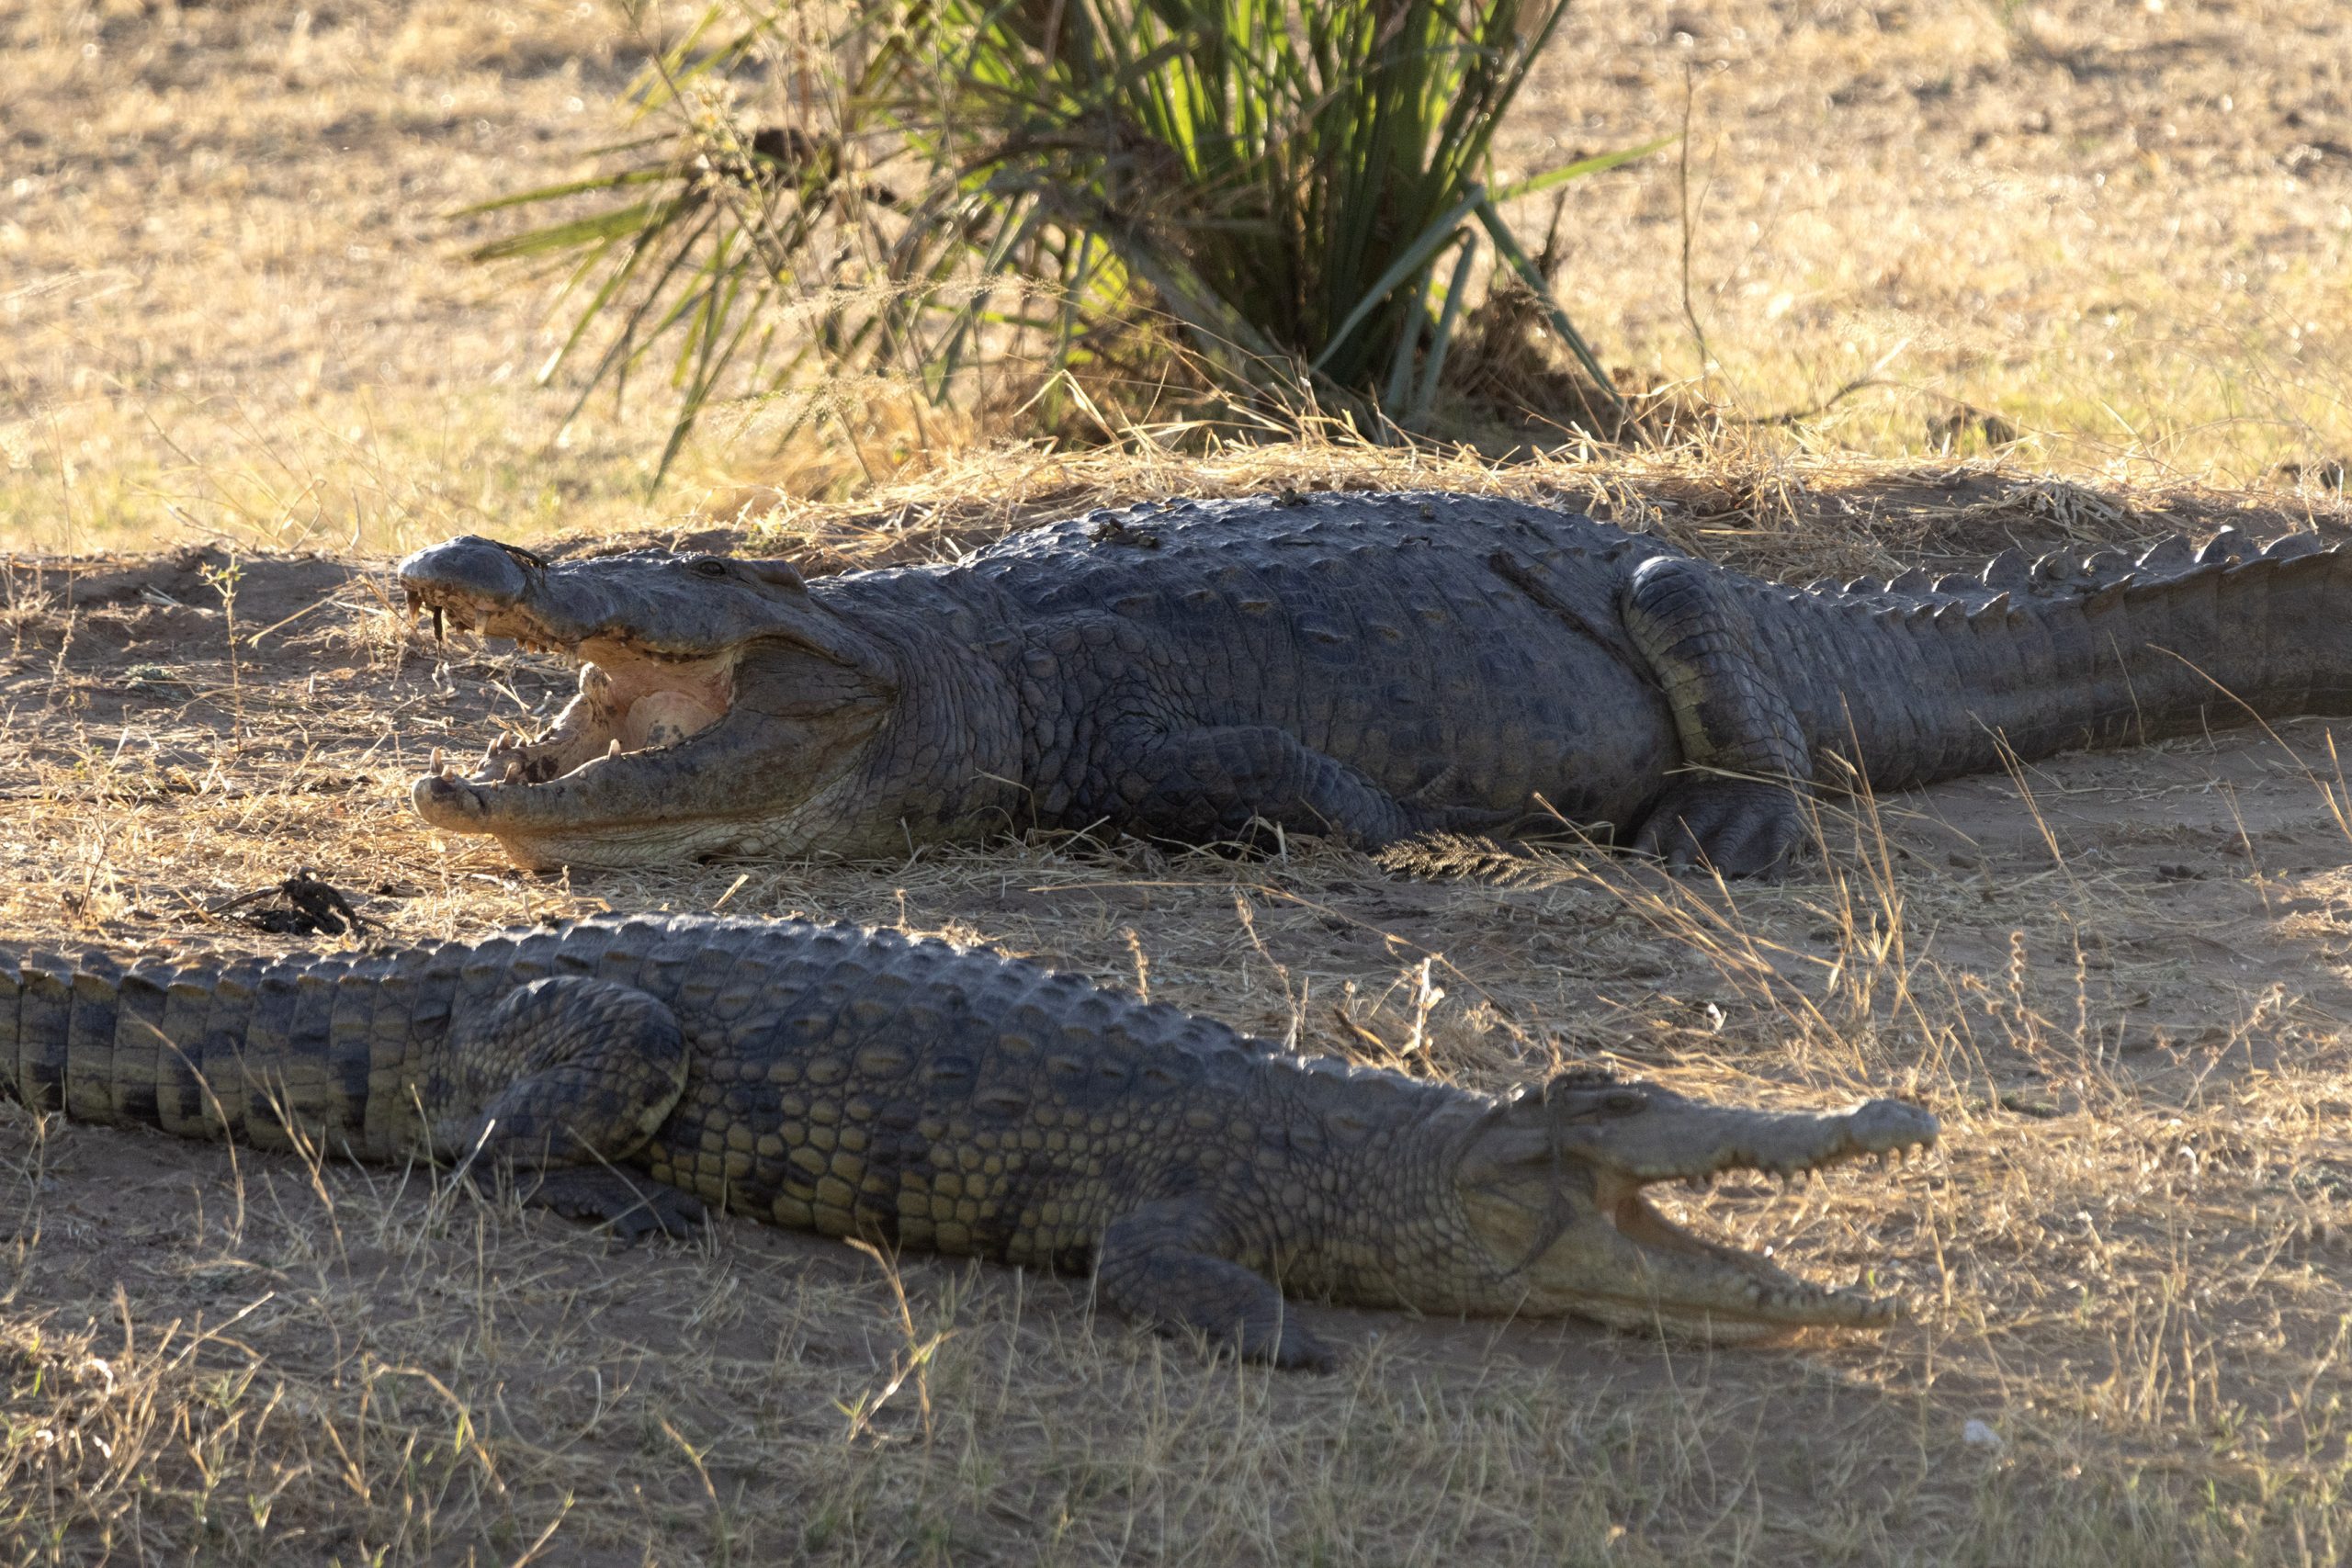 Basking Nile crocodiles, Mana Pools, Zimbabwe.